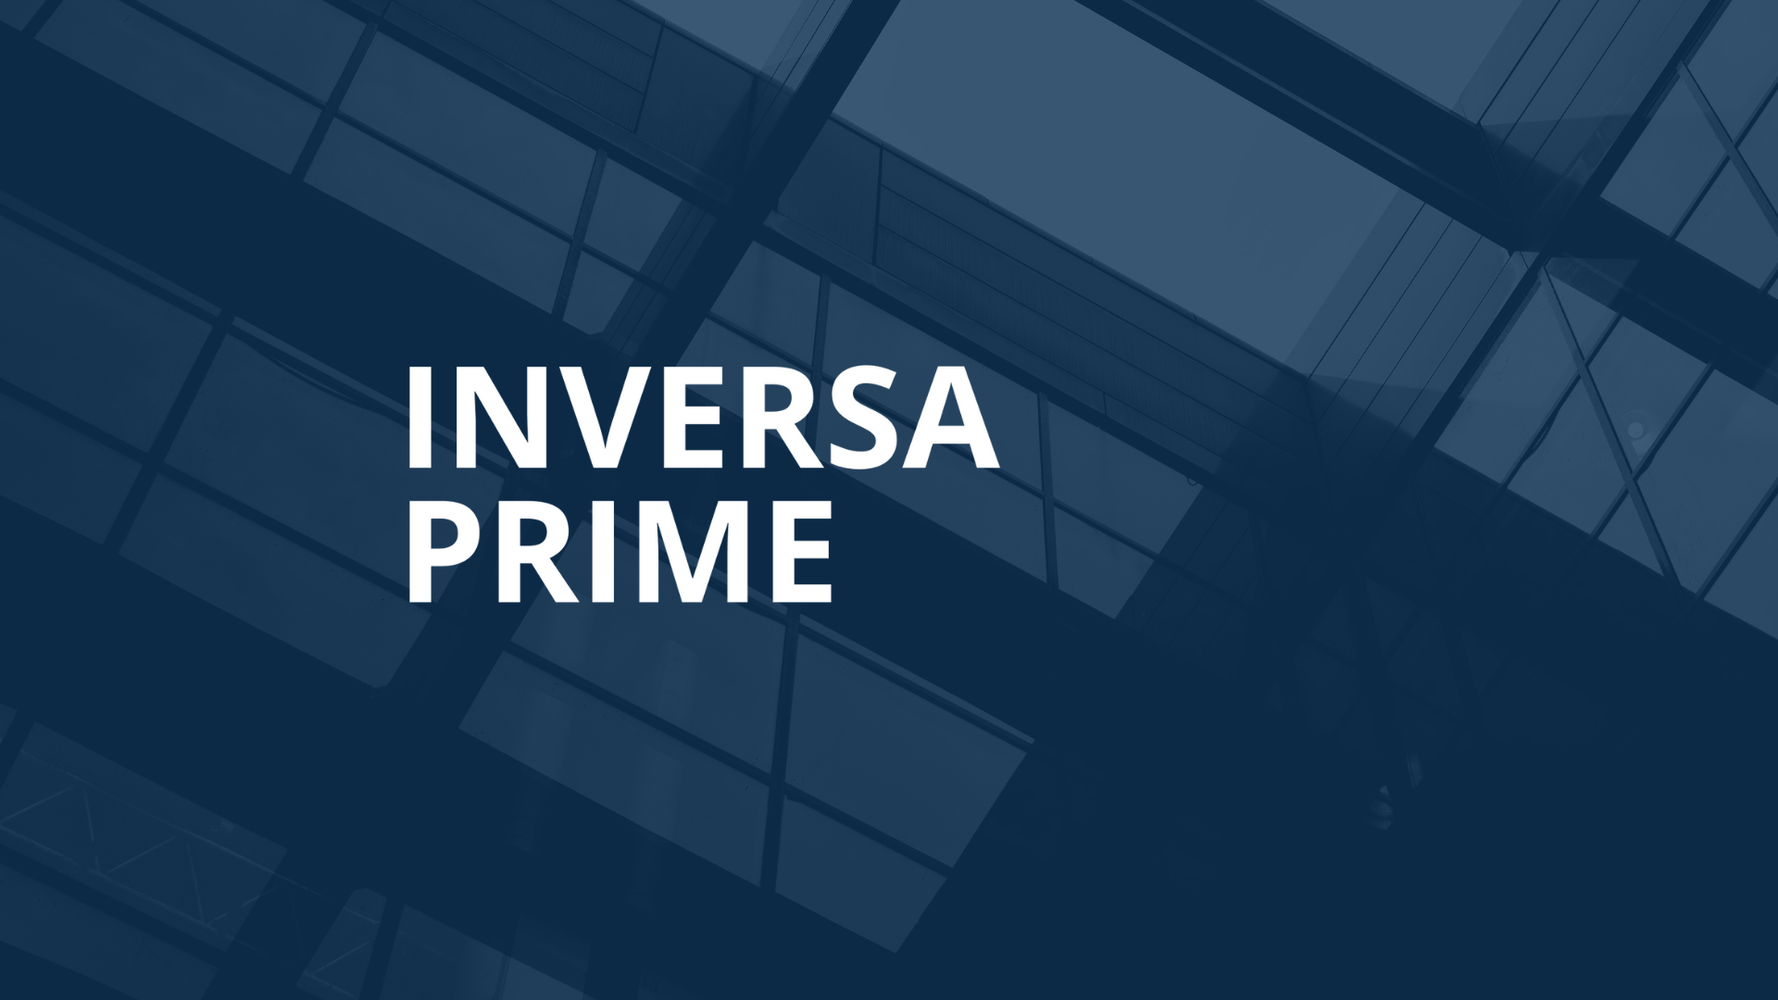 Inversa Prime SOCIMI: "Inversa Prime es la única Socimi que ofrece la vivienda inversa, un producto innovador, en España"